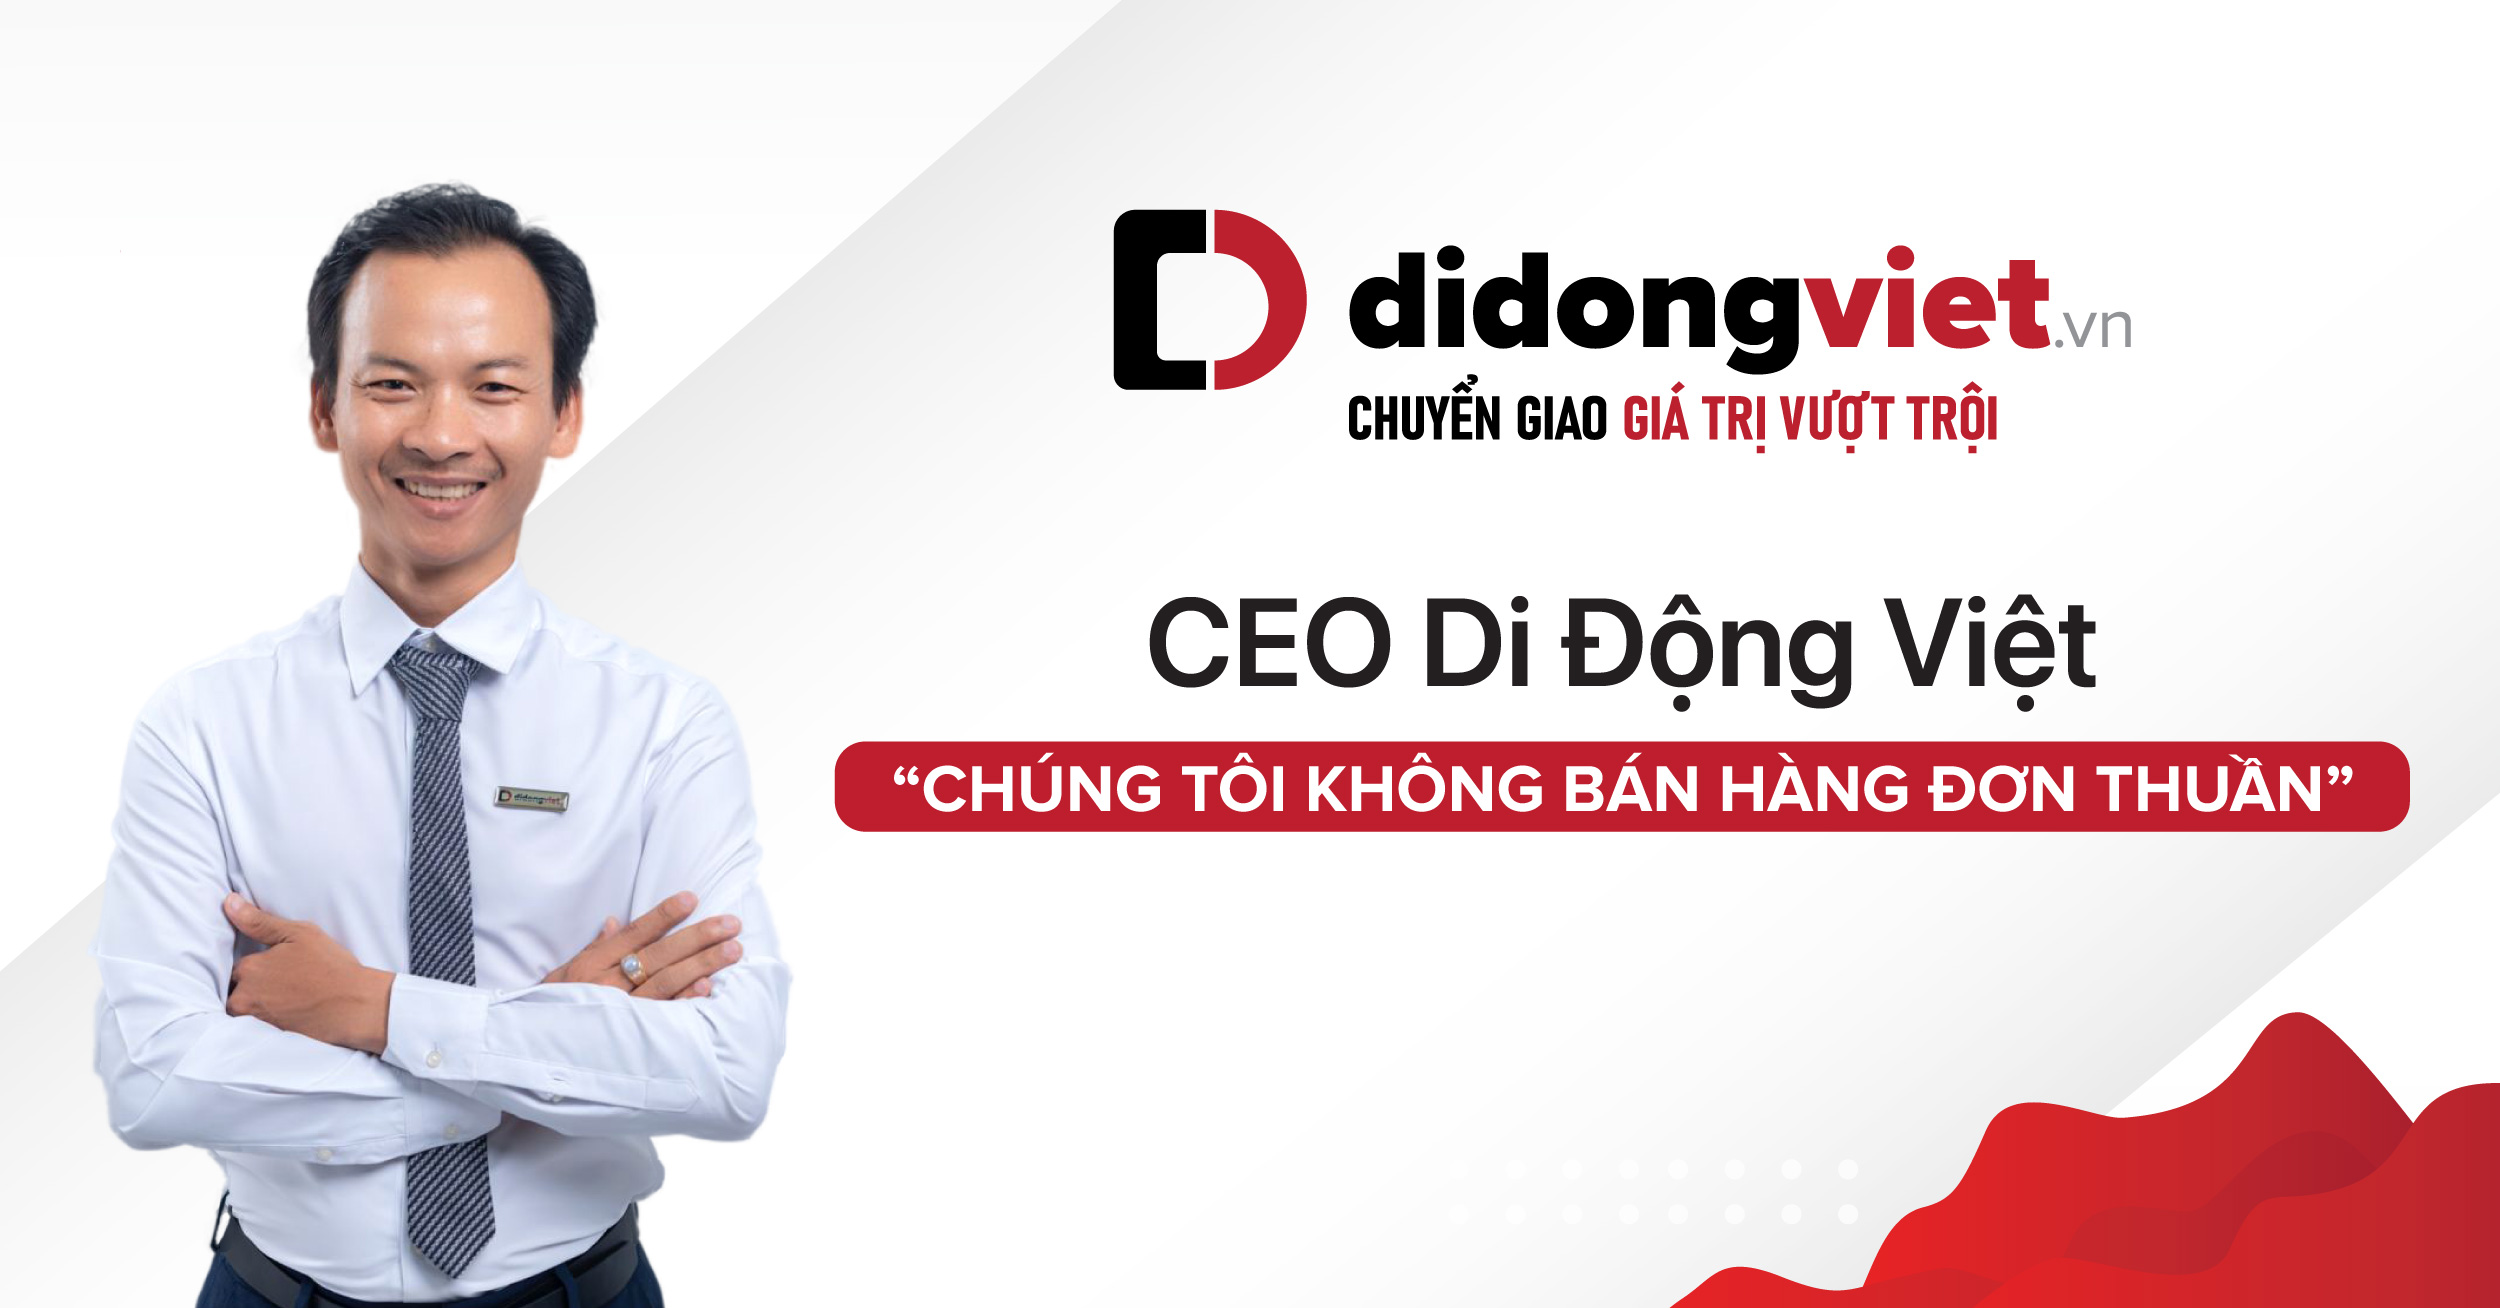 CEO Di Động Việt: “Chúng tôi không bán hàng đơn thuần”